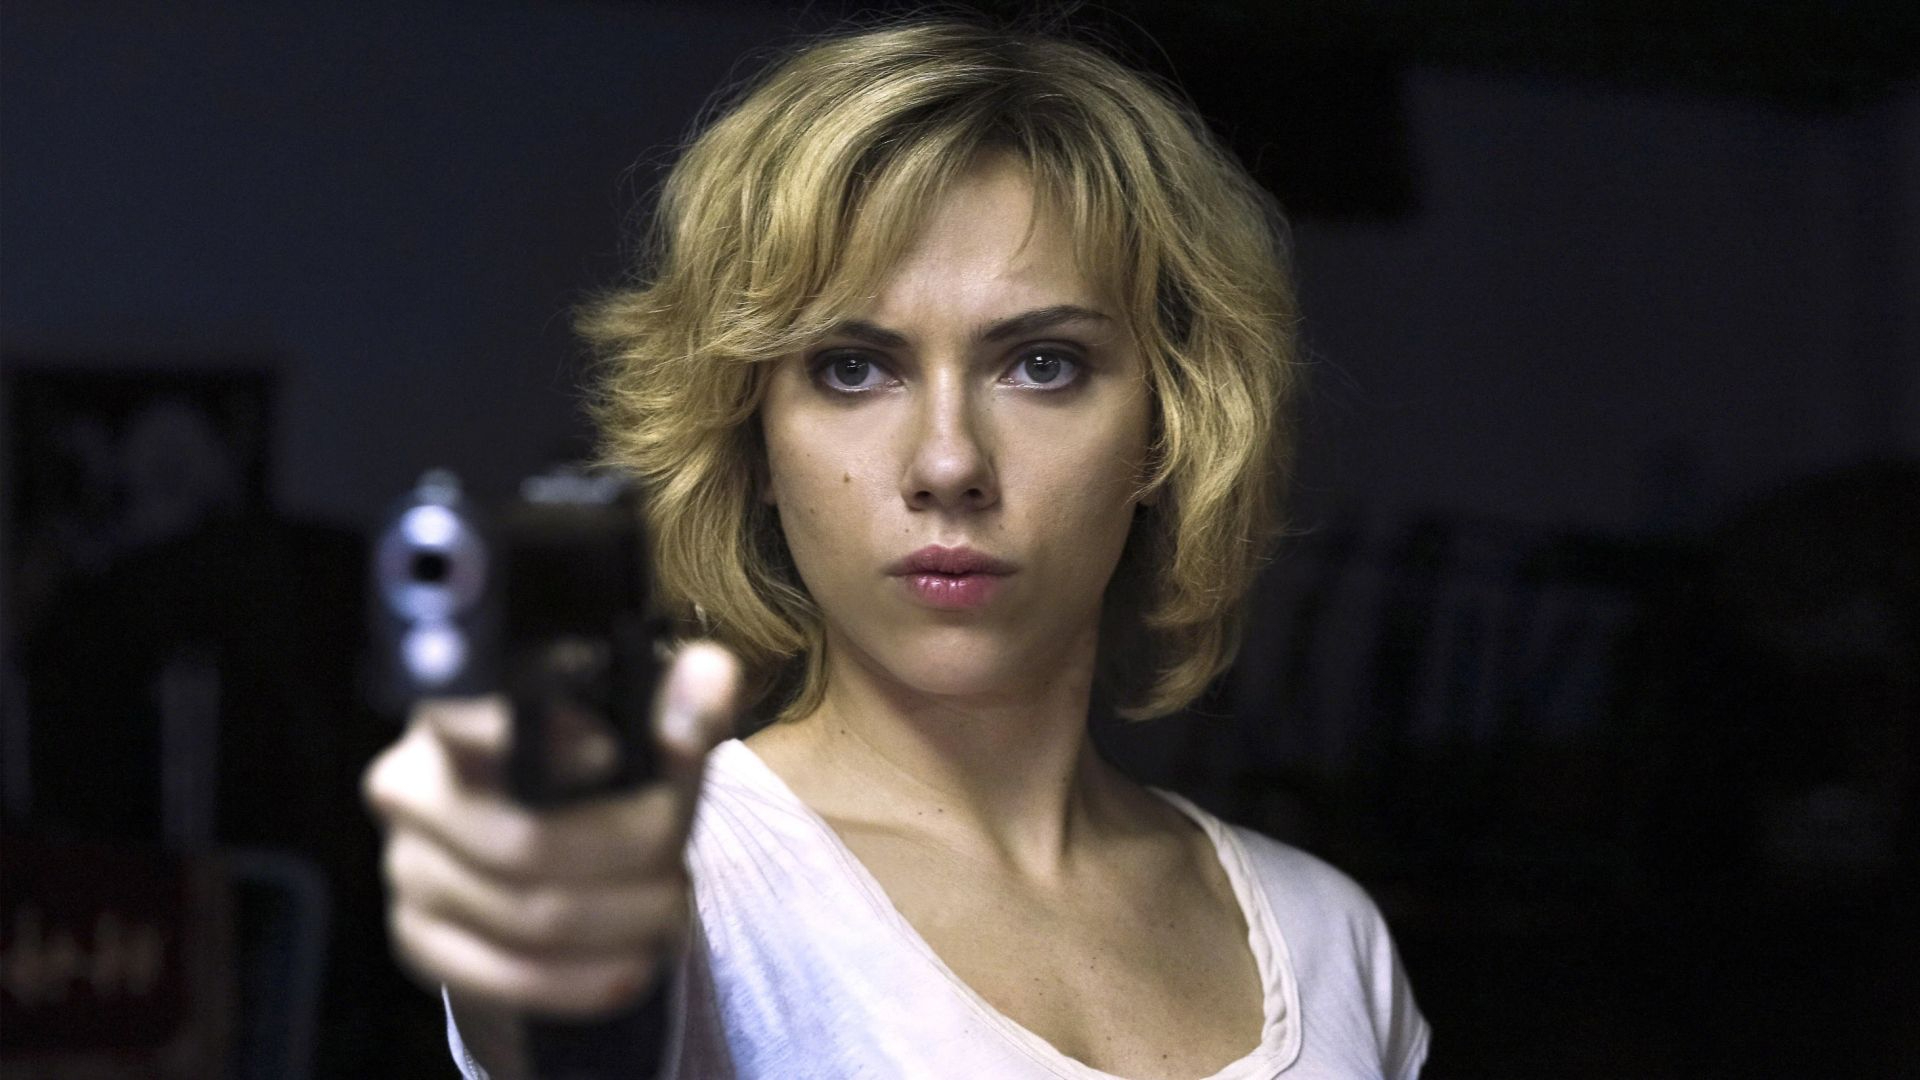 Picture of Scarlett Johansson  Scarlett johansson movies